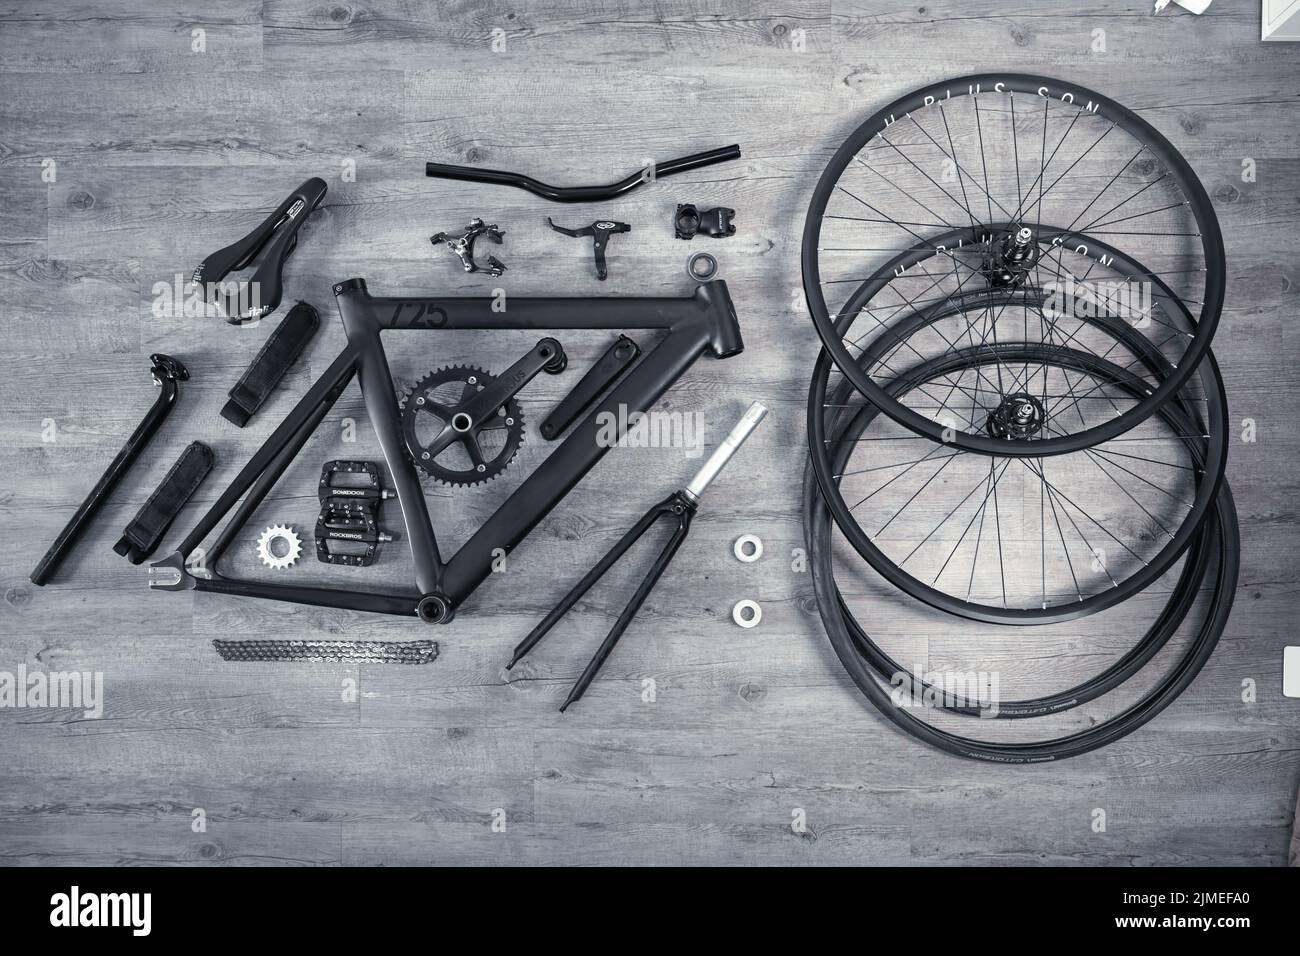 Un rayon plat de toutes les parties individuelles d'un vélo couché sur un sol gris, vélo démonté Banque D'Images